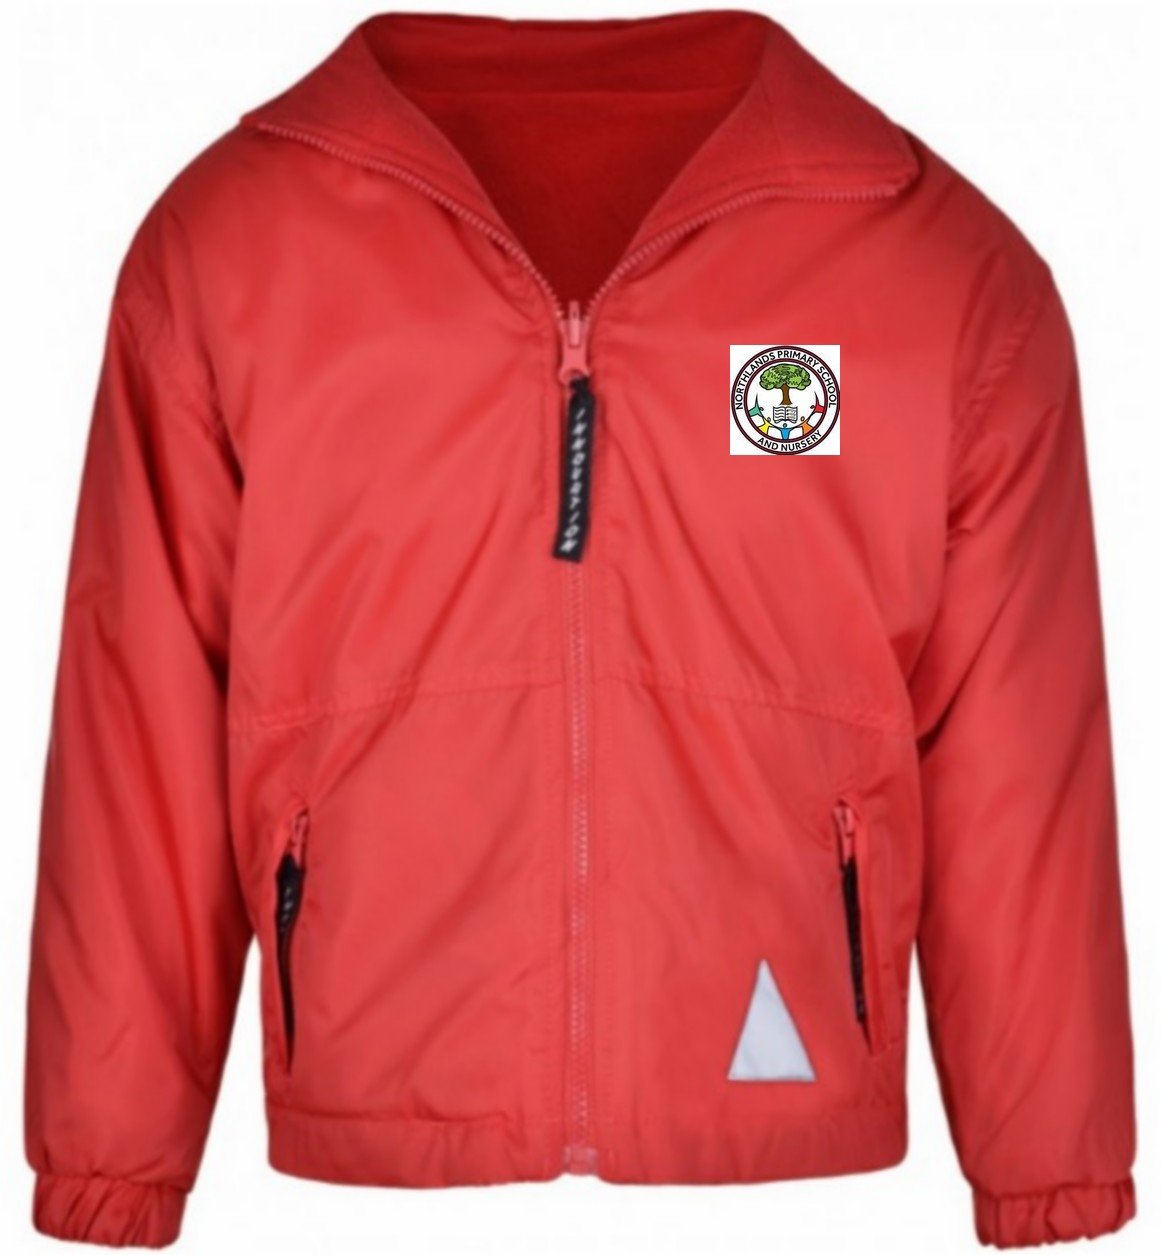 Northlands Junior School - Red Reversible Fleece Jacket with School Logo - Schoolwear Centres | School Uniform Centres